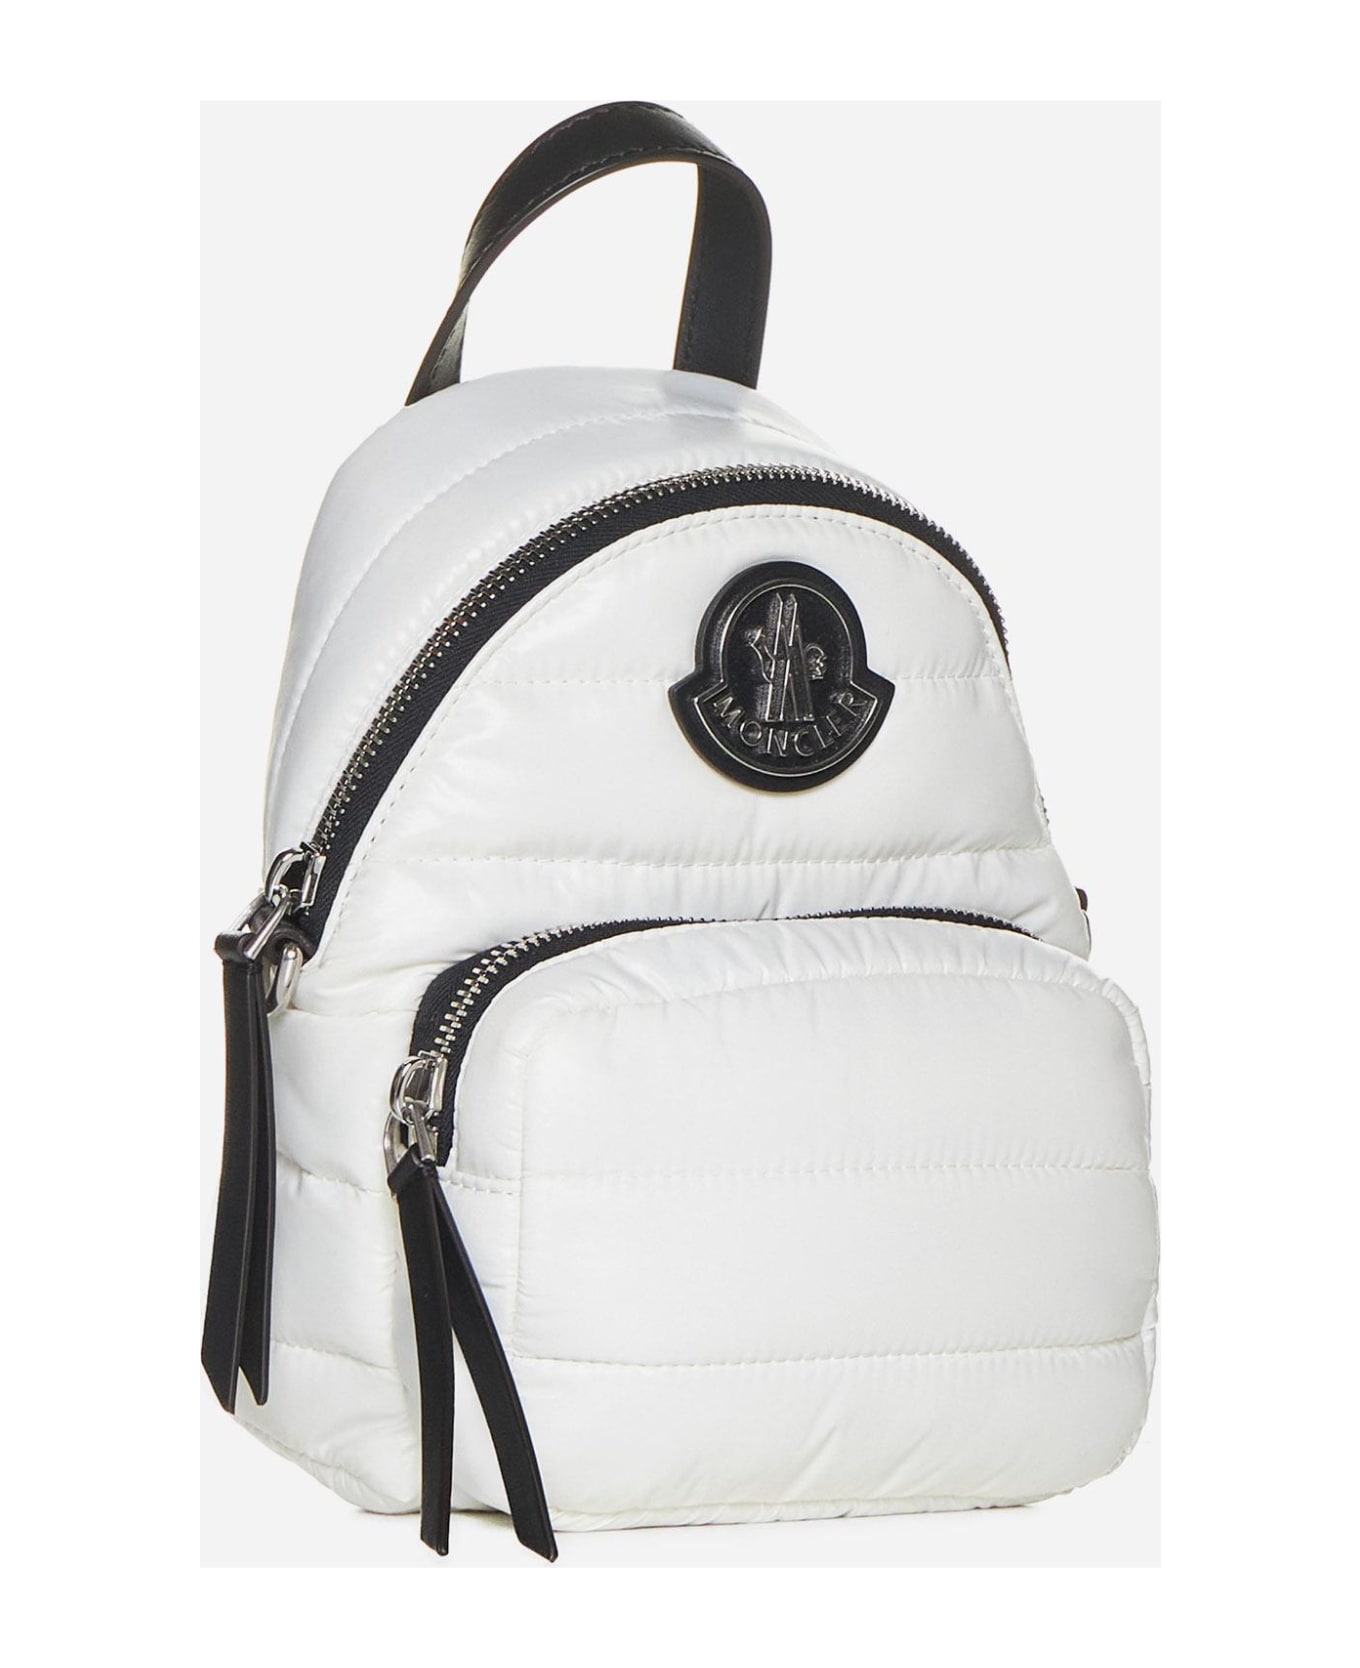 Moncler Kilia Nylon Small Crossbody Backpack Bag - Beige バックパック